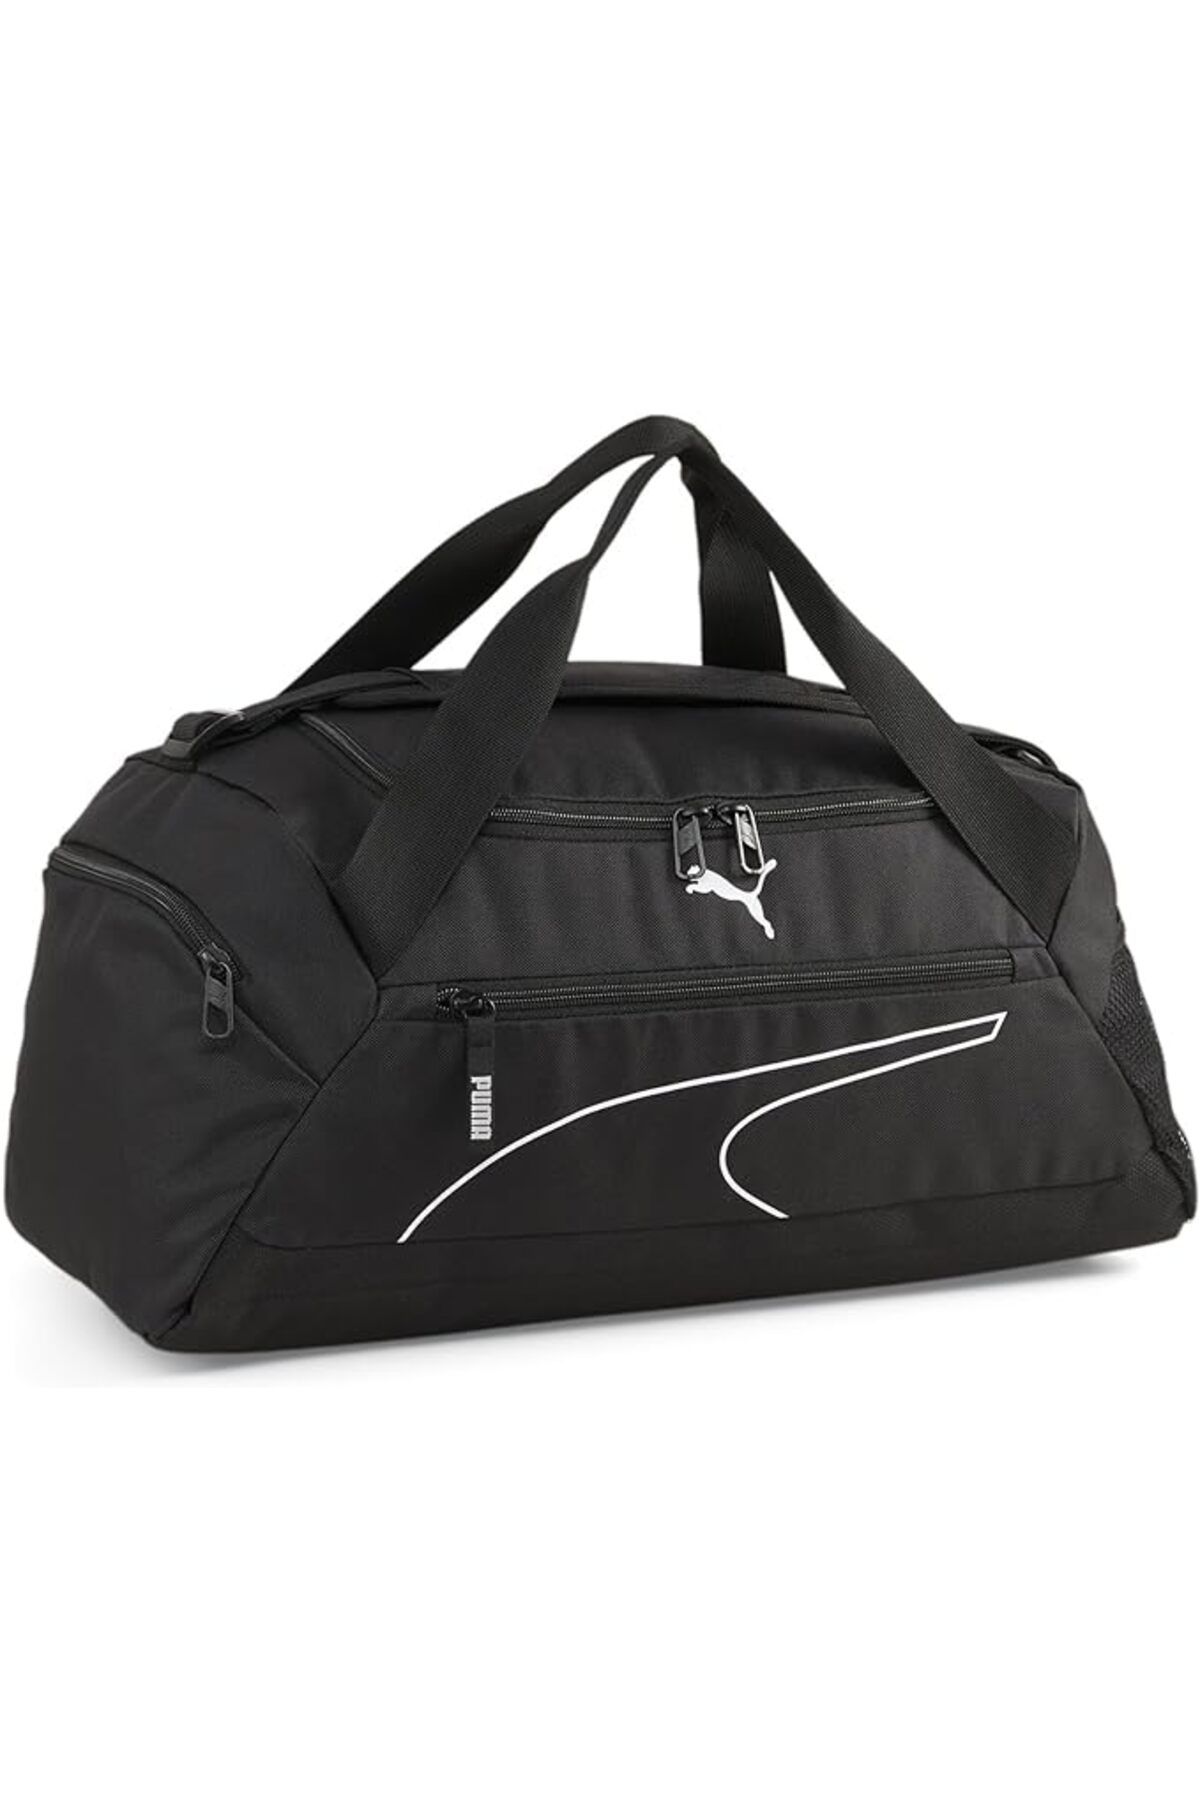 Puma Fundamentals Sports Bag S09033101